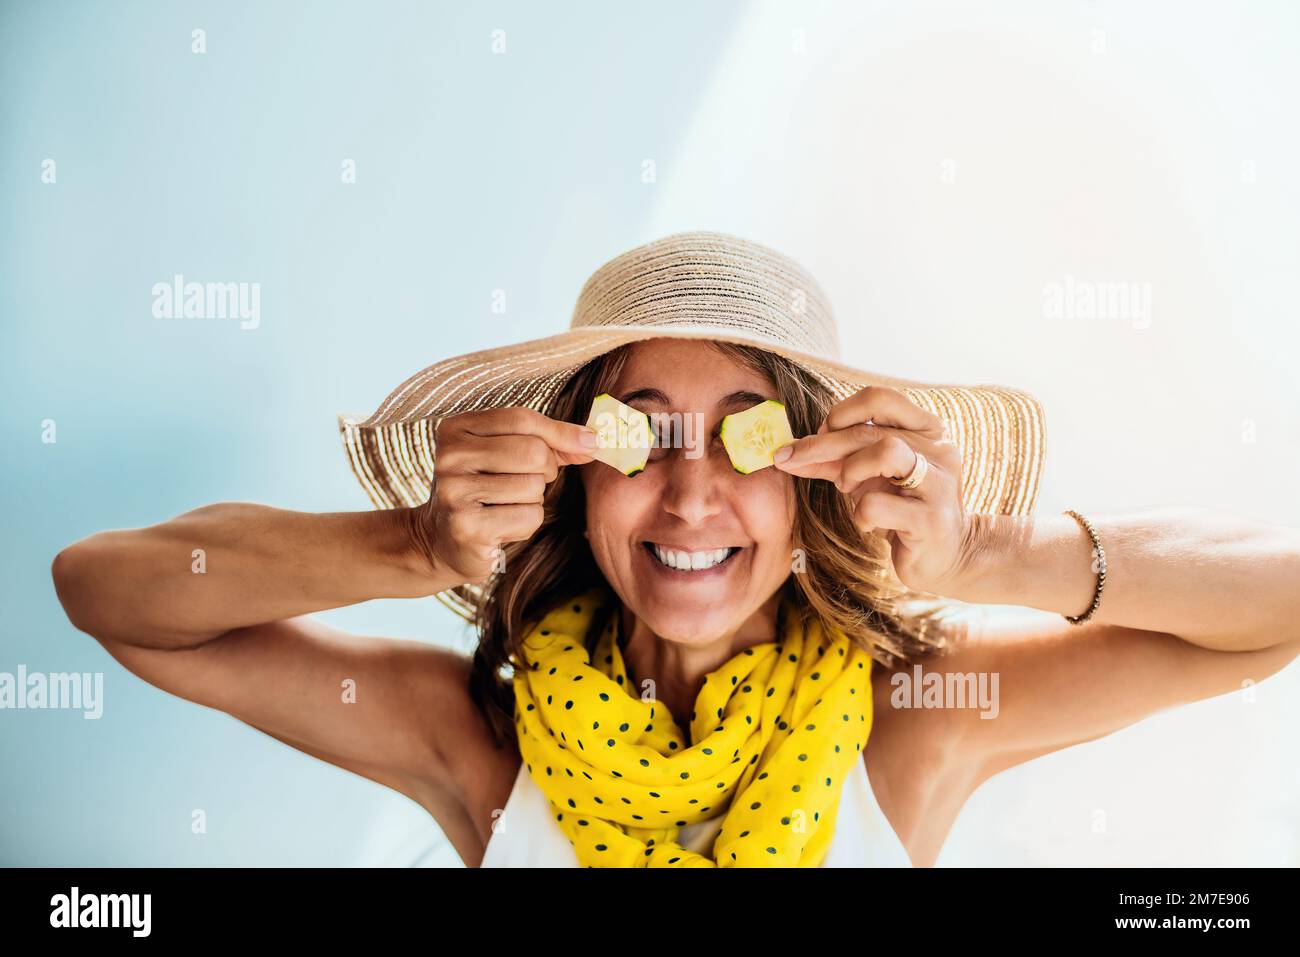 Eine Frau mittleren Alters mit Strohhut und gelbem Schal macht Witze und amüsiert sich, indem sie ihre Augen mit zwei Gurkenscheiben bedeckt. Spaß- und Gesundheitskonzept Stockfoto